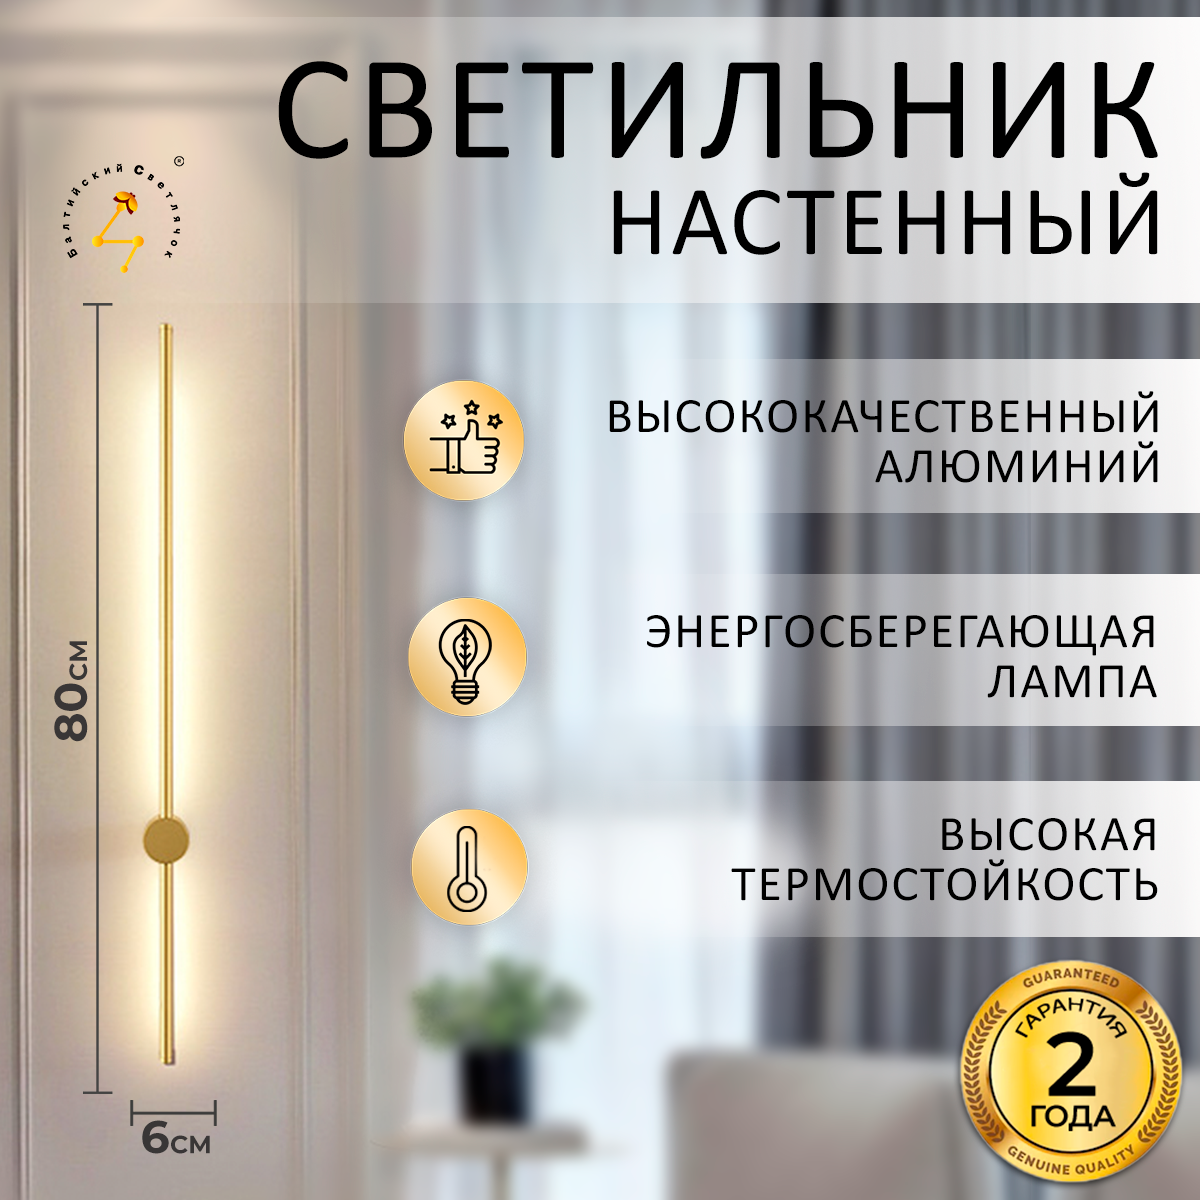 Светильник настенный Балтийский Светлячок, 1 шт, золотистый, 80 см